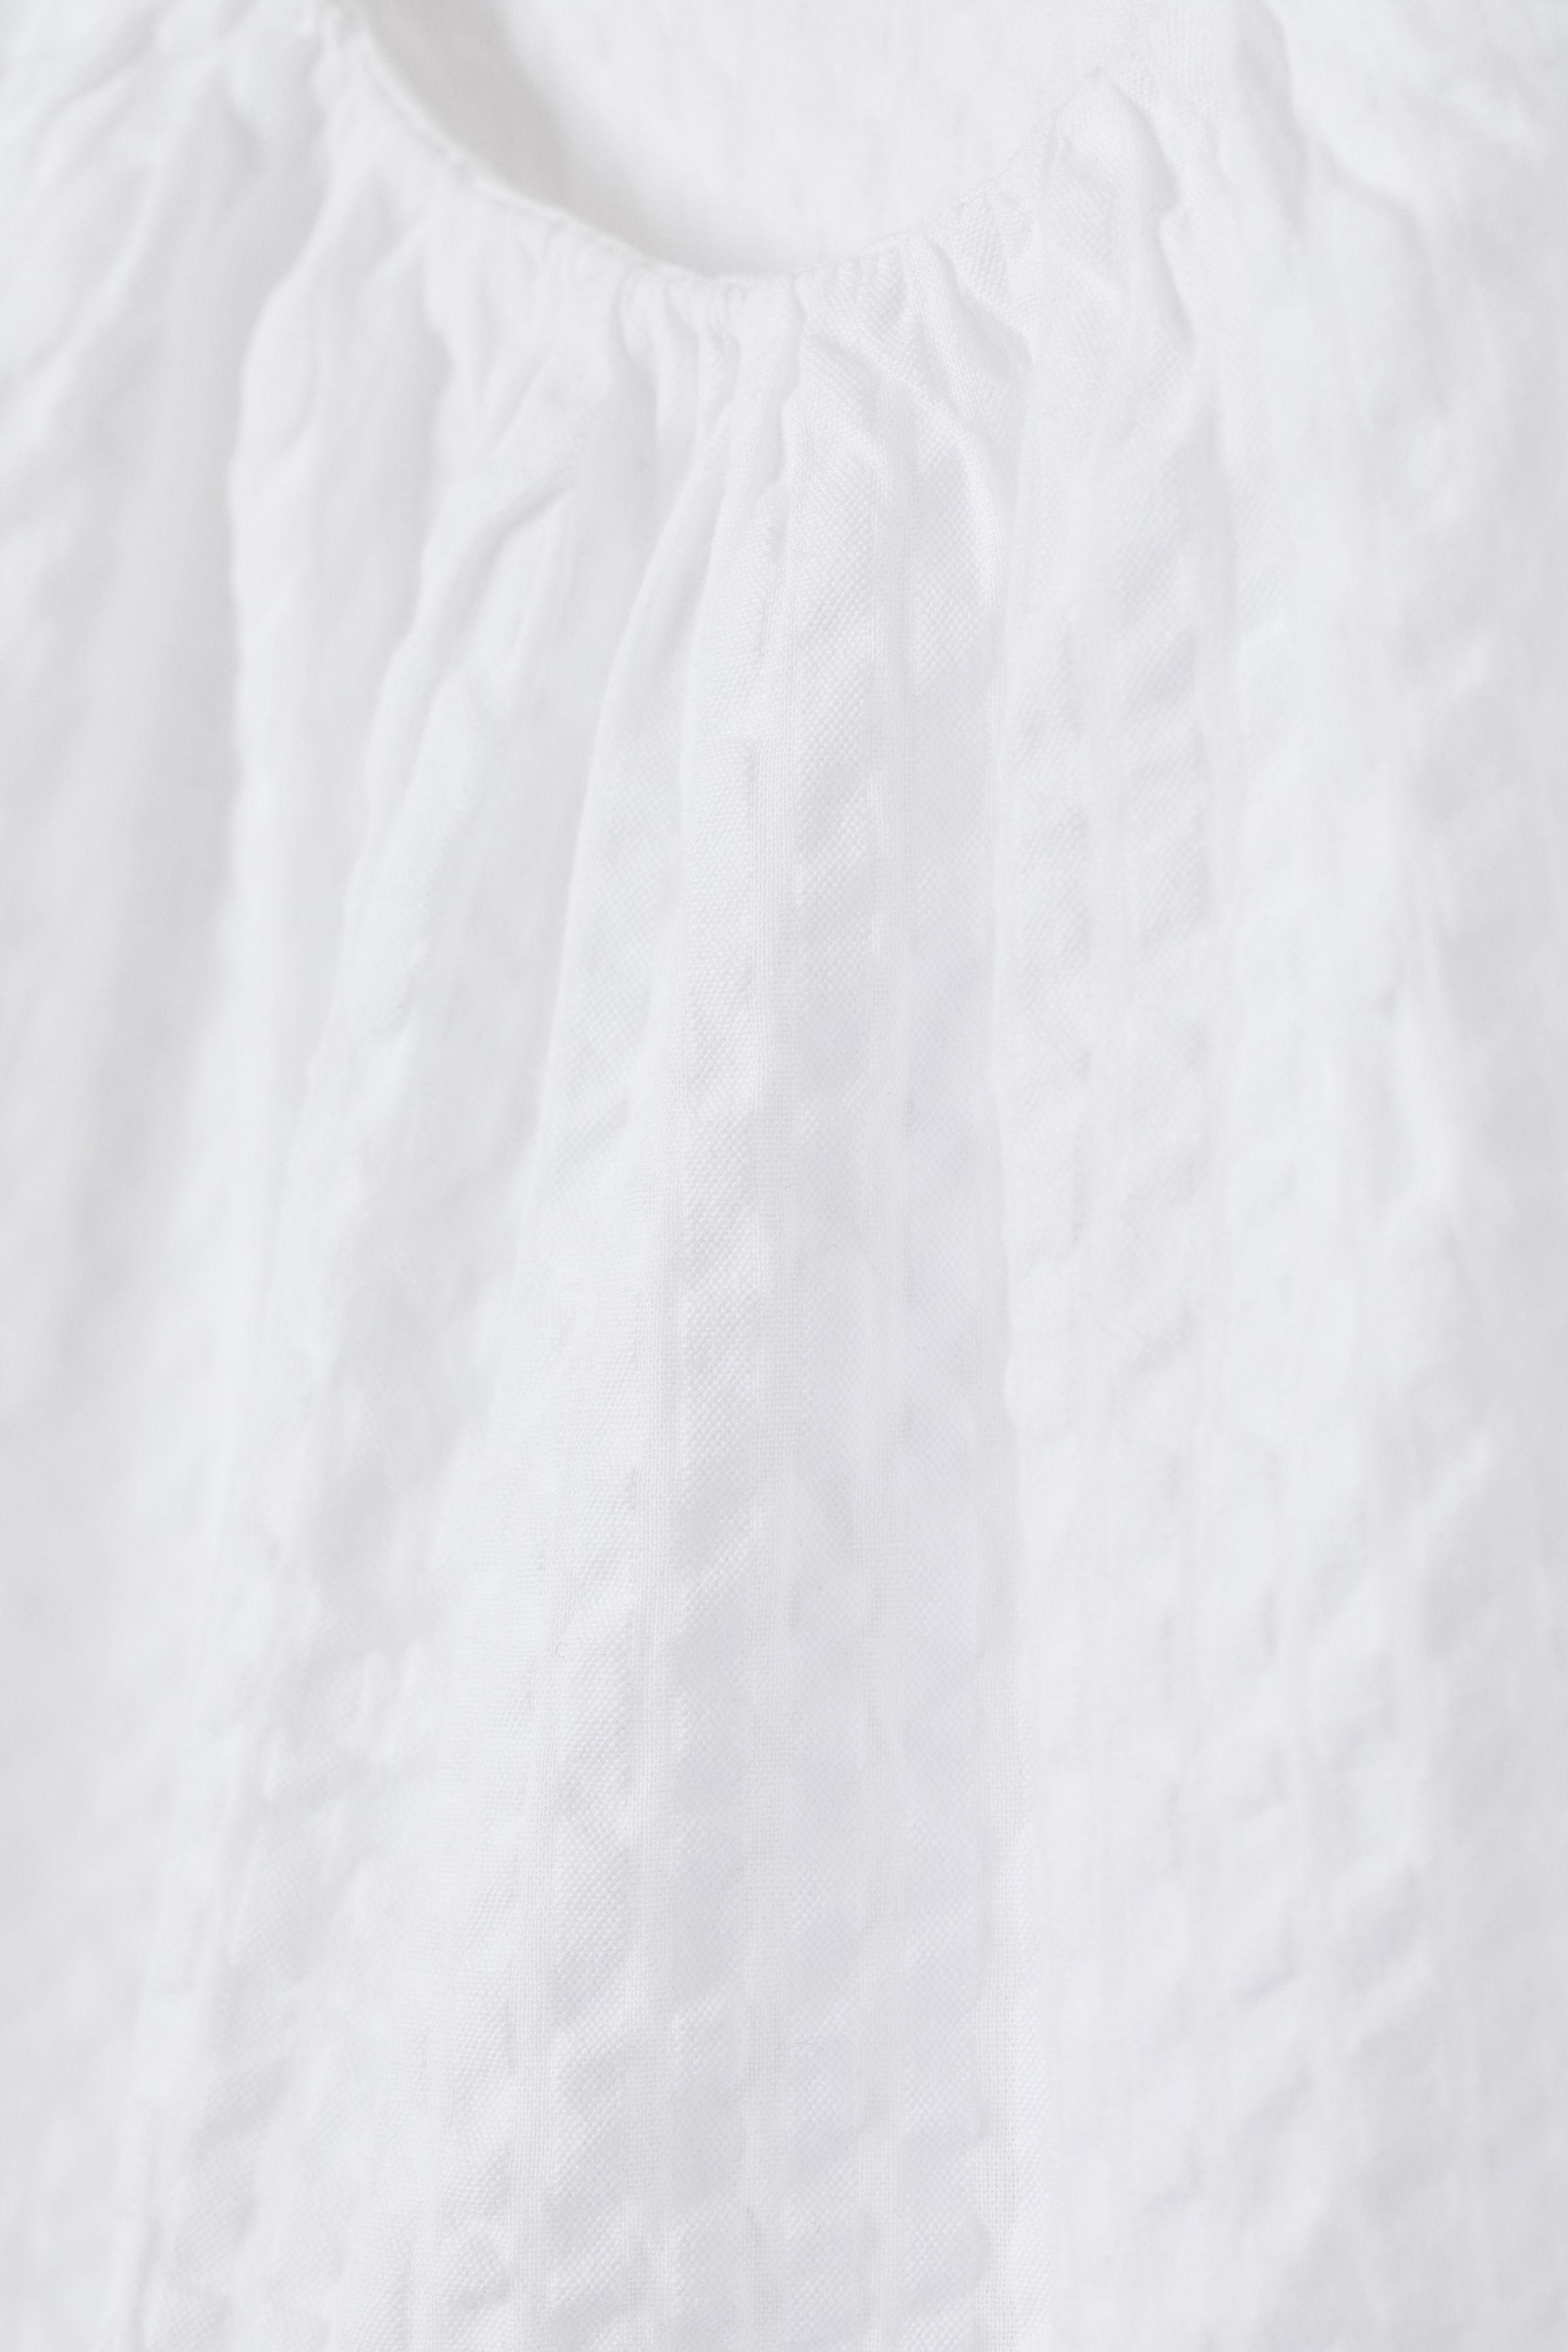 H&M Cotton Seersucker Blouse in White - Lyst